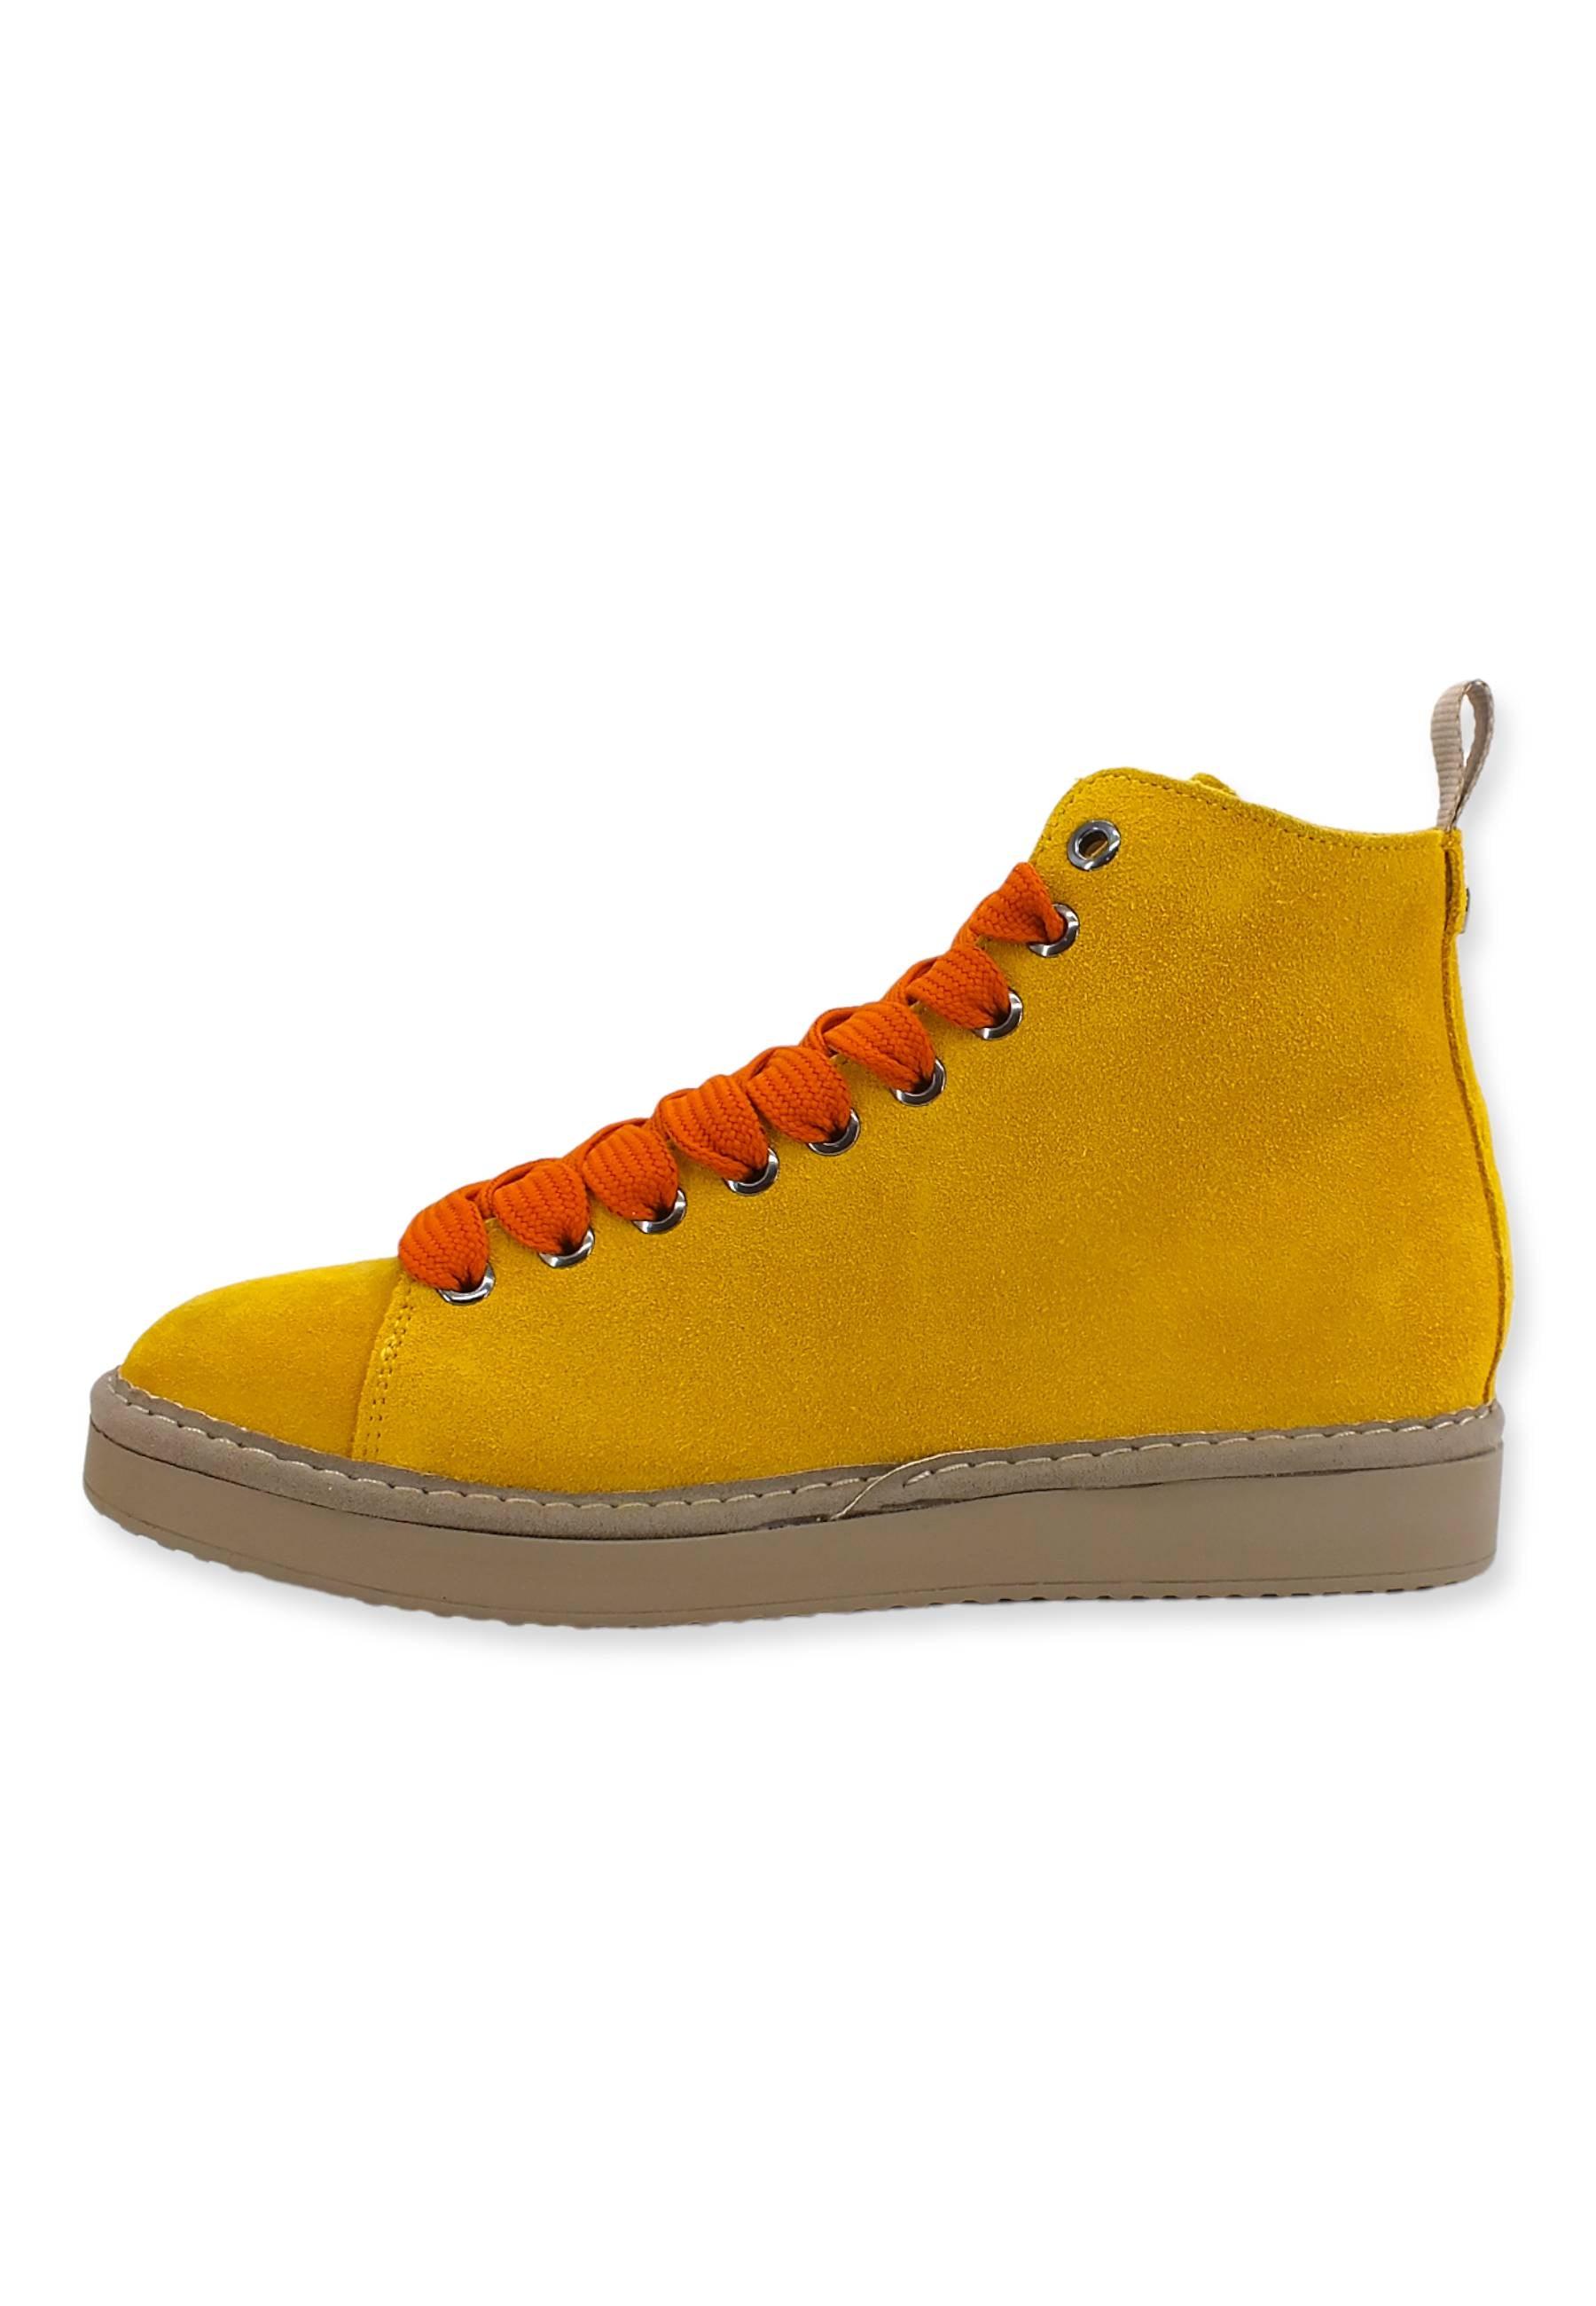 PAN CHIC Ankle Boot Sneaker Donna Giallo Citron Burnt Orange P01W1400200005 - Sandrini Calzature e Abbigliamento